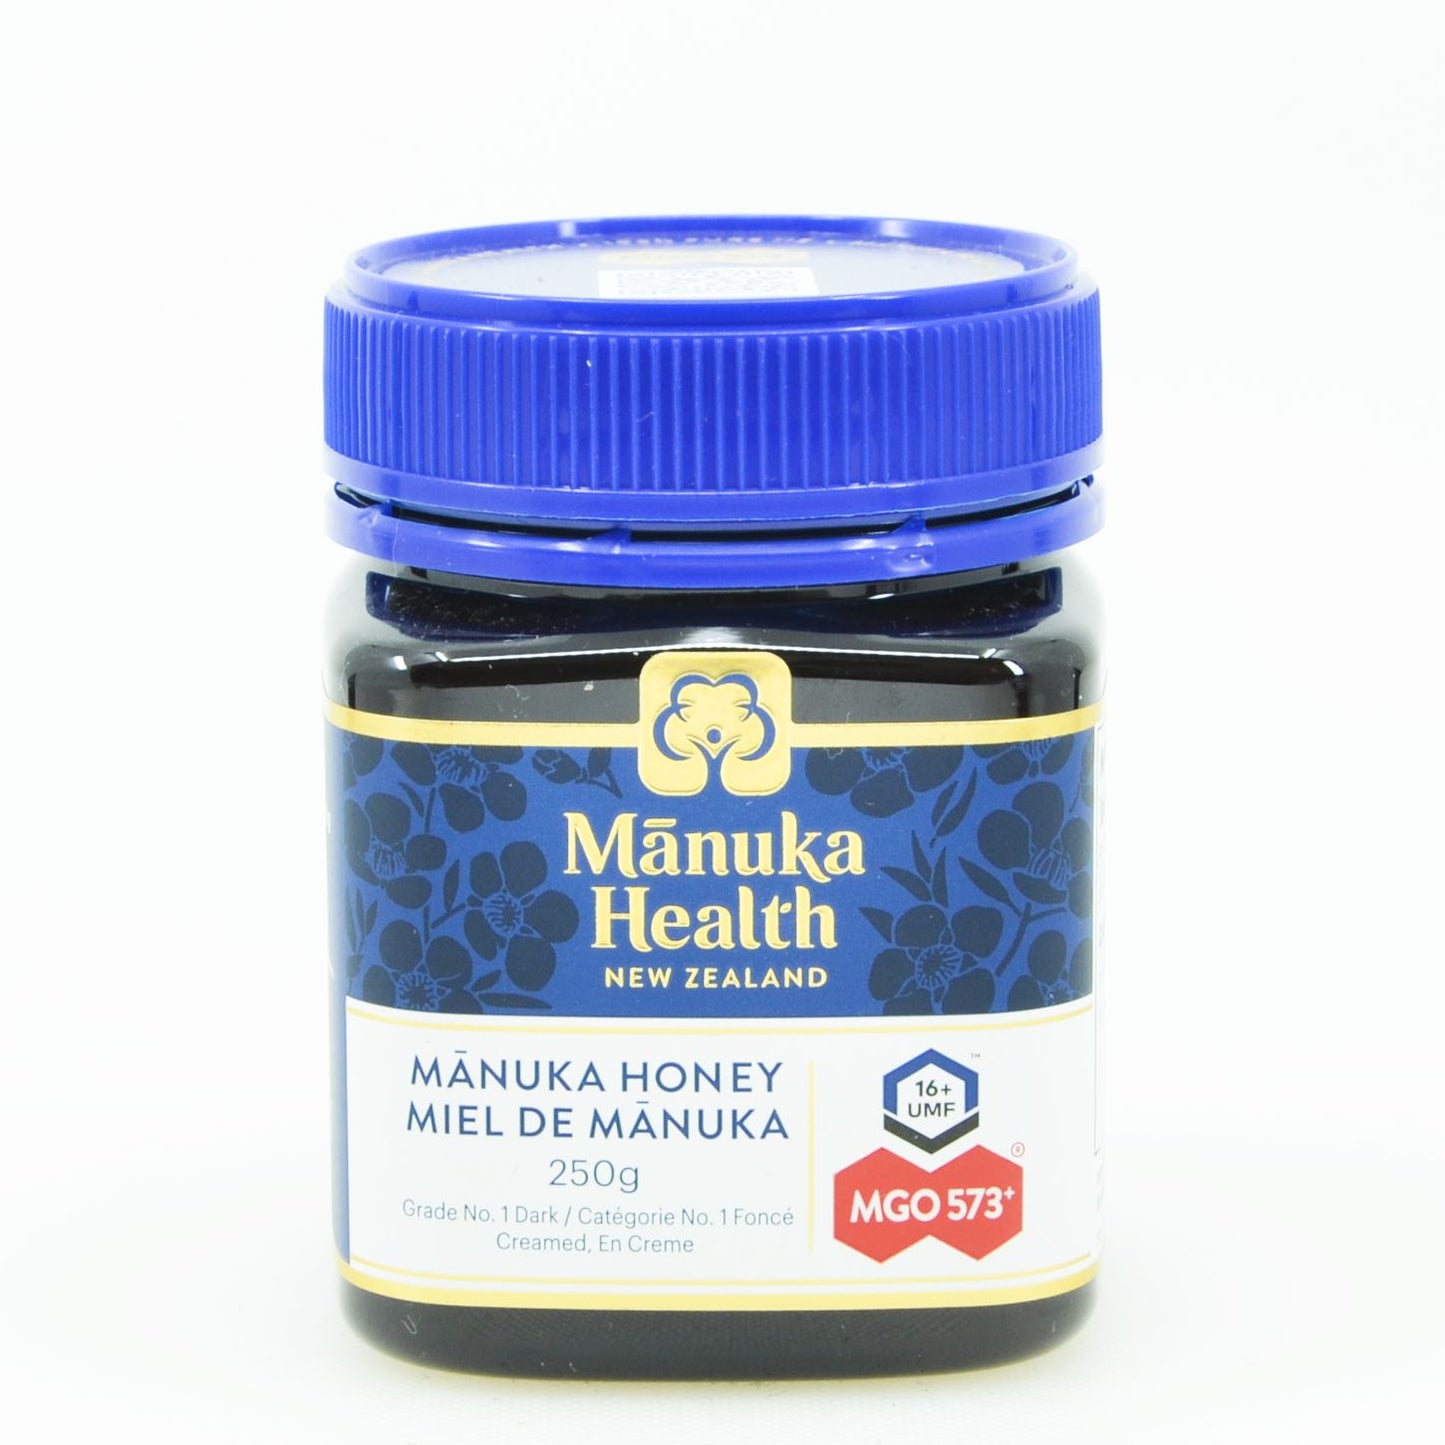 Manuka Honey - UMF 16+ (MGO 573+) - by Manuka Health